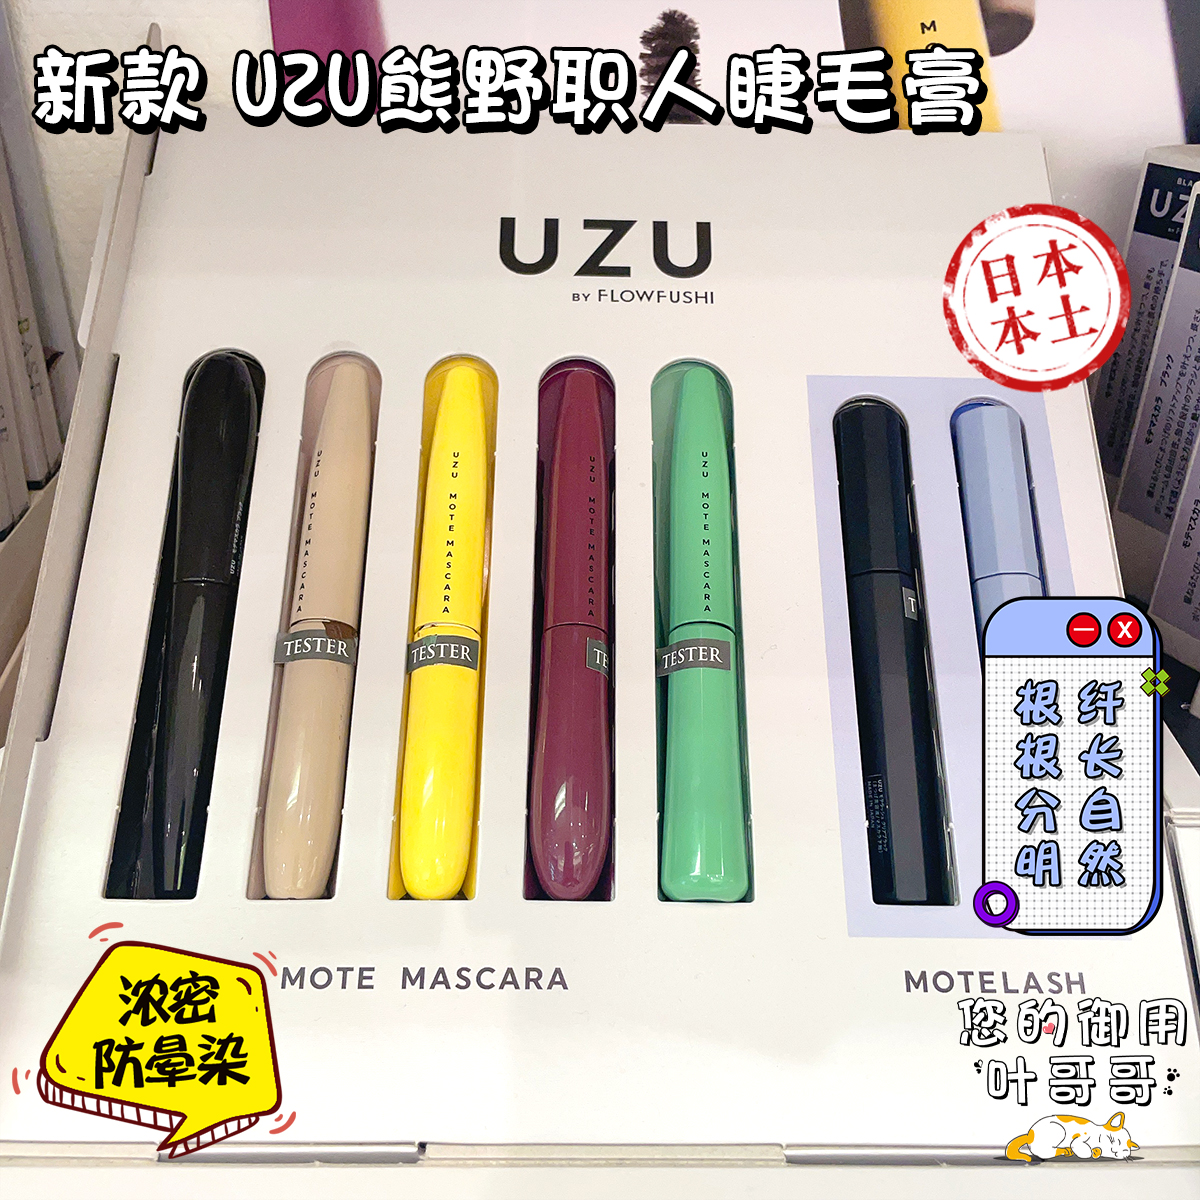 日本新款UZU熊野职人彩色睫毛膏FLOWFUSHI自然浓密纤长防水不晕染